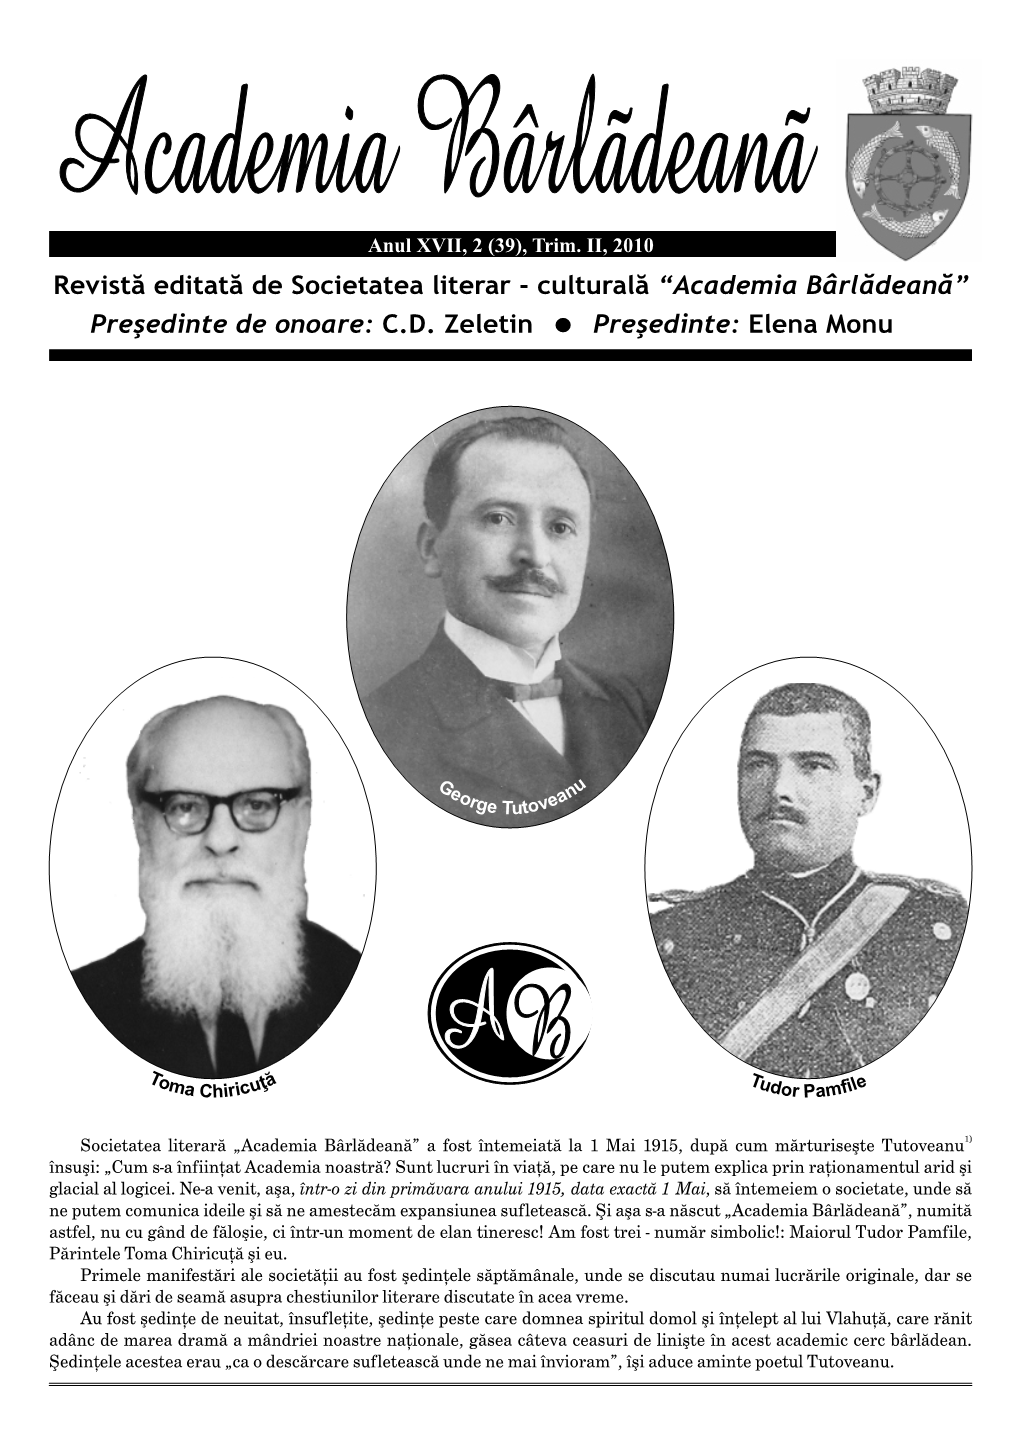 Revistă Editată De Societatea Literar - Culturală “Academia Bârlădeană” Preşedinte De Onoare: C.D